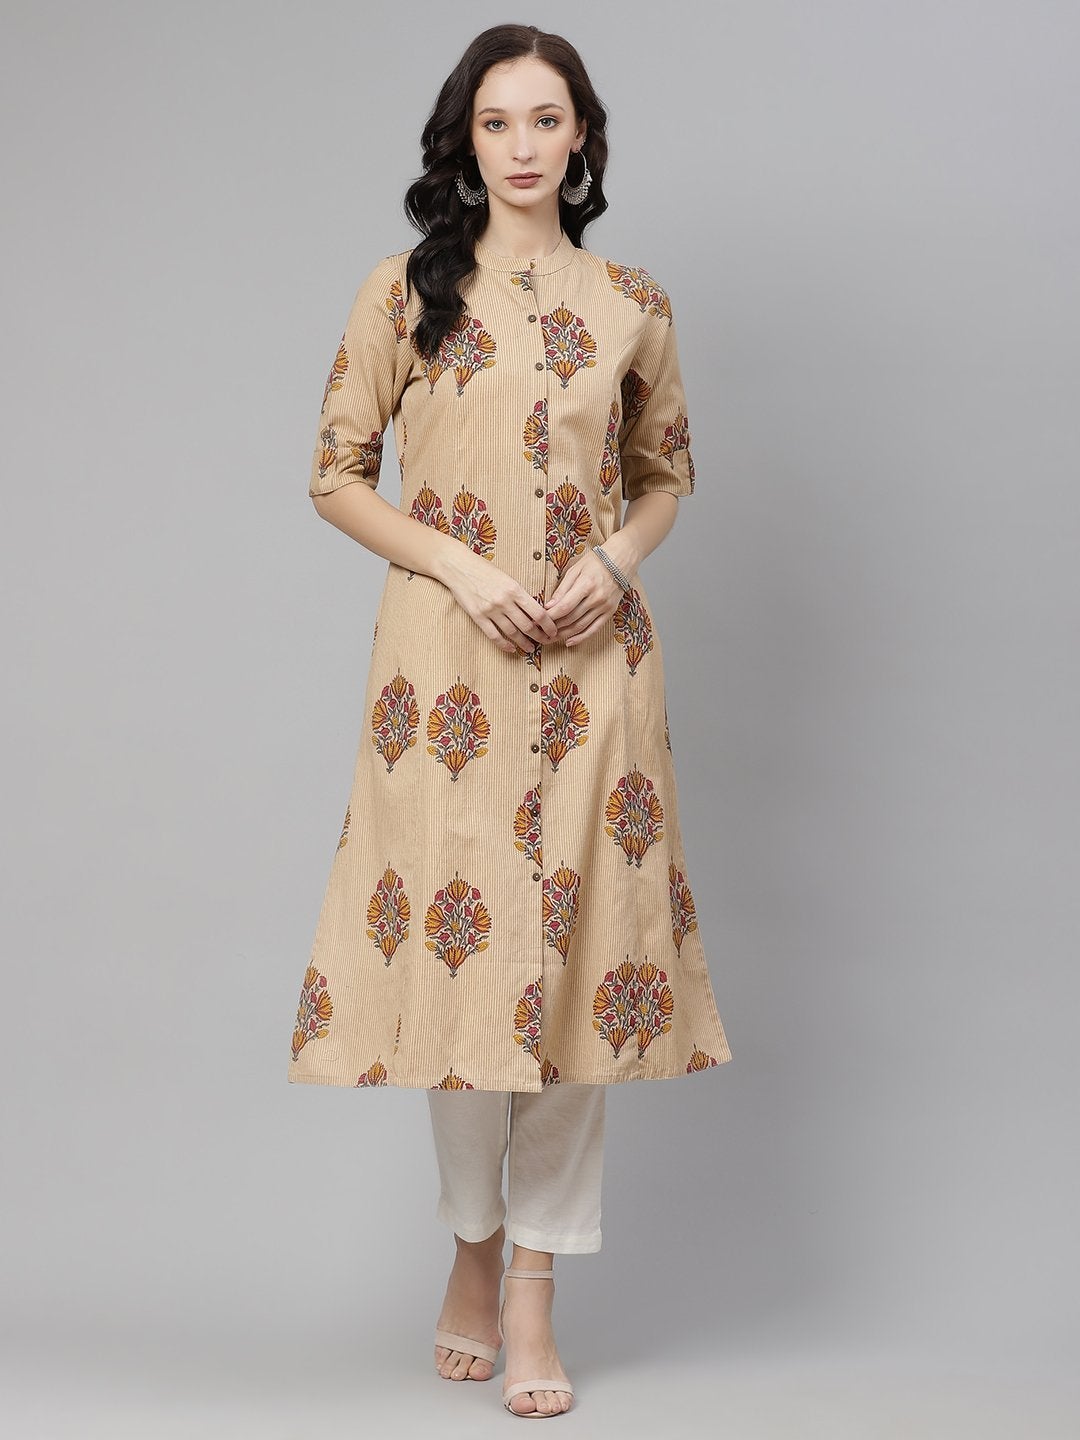 Women's Beige Color Cotton Printed A-line kurta - Divena